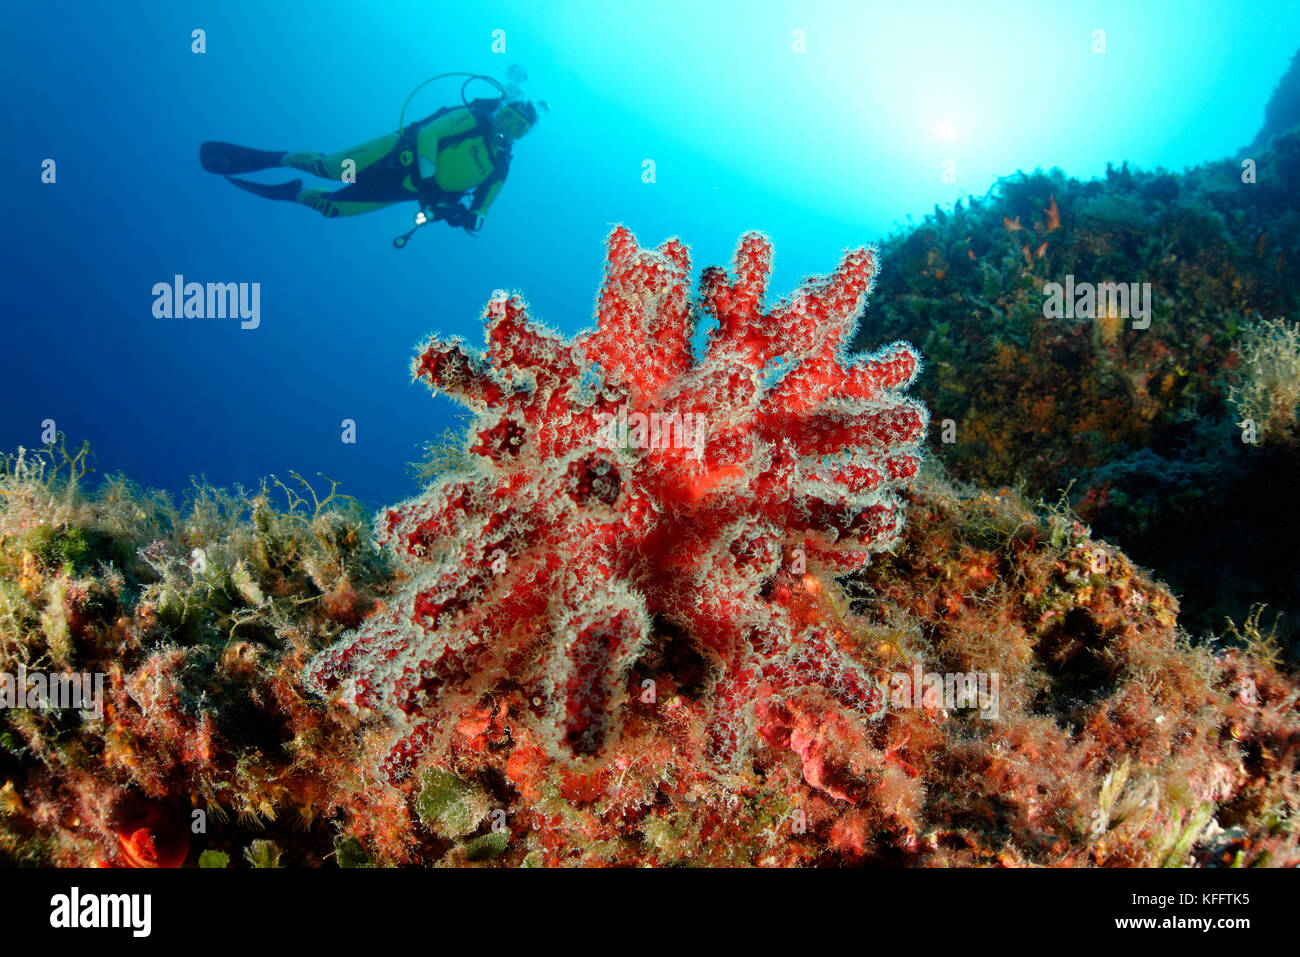 Red dead mans dedos, alcyonium palmatum, coralreef y buzo, Mar Adriático, el mar mediterráneo, Selce, kvaner golfo, CROACIA Foto de stock